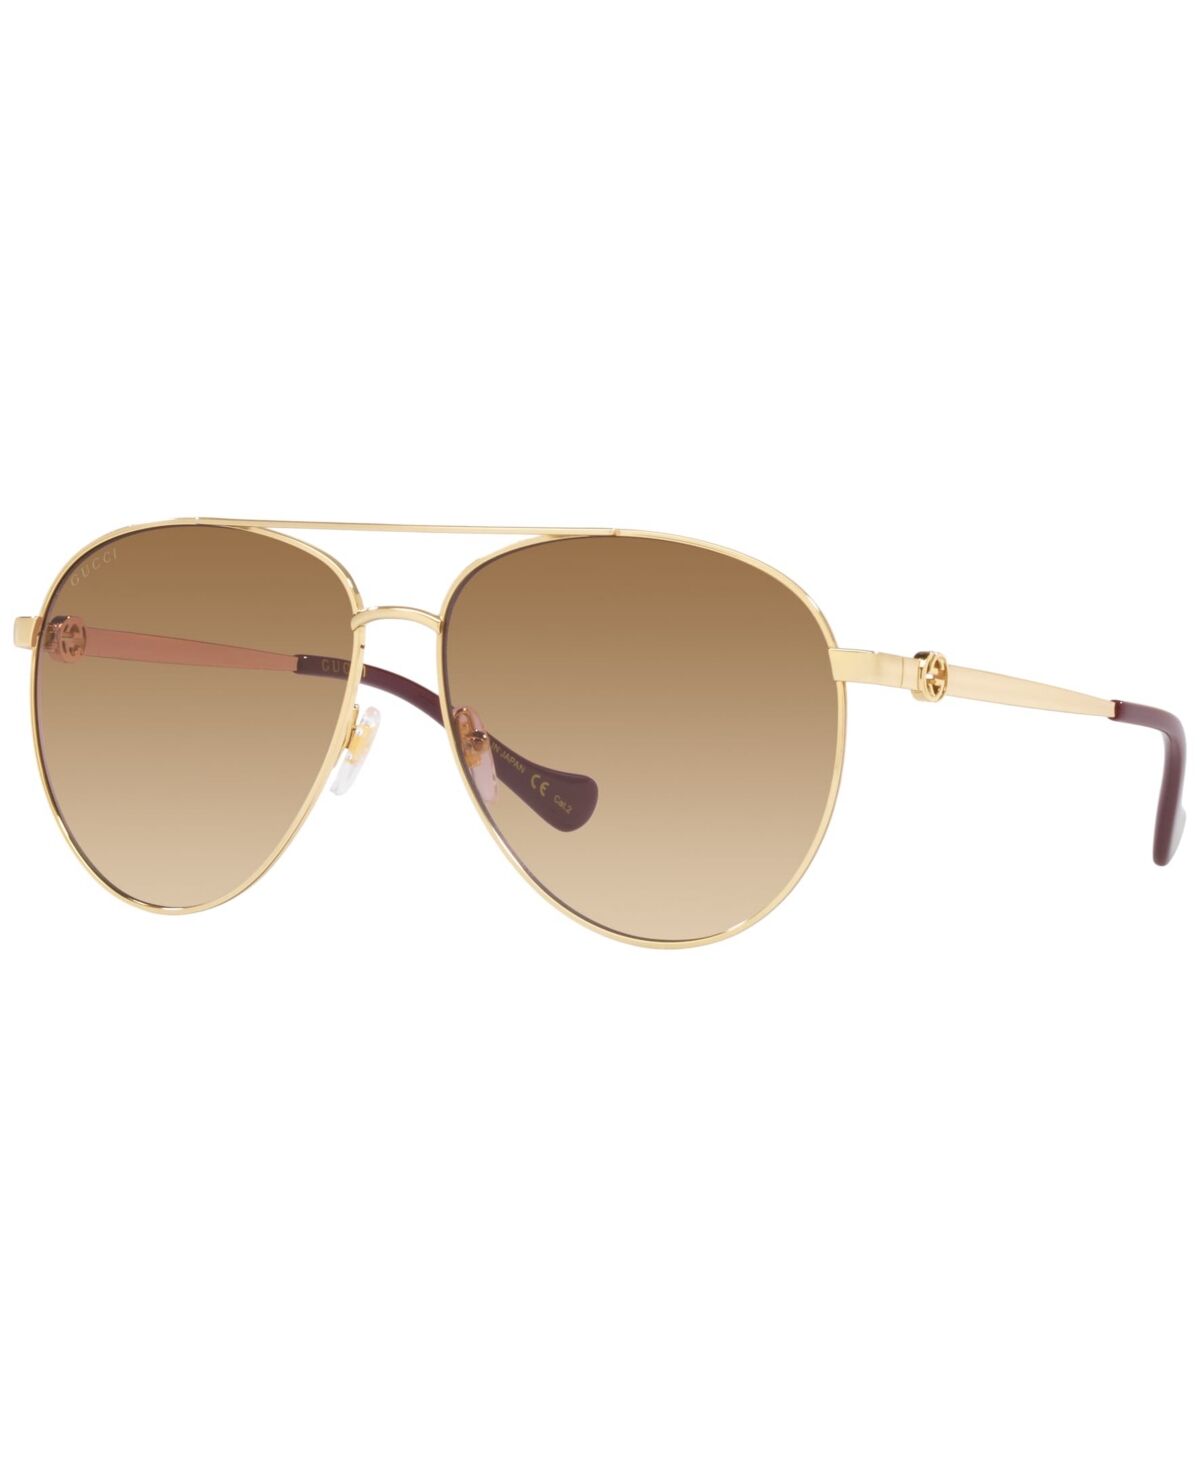 Gucci Women's Sunglasses, GG1088S 61 - Gold-Tone